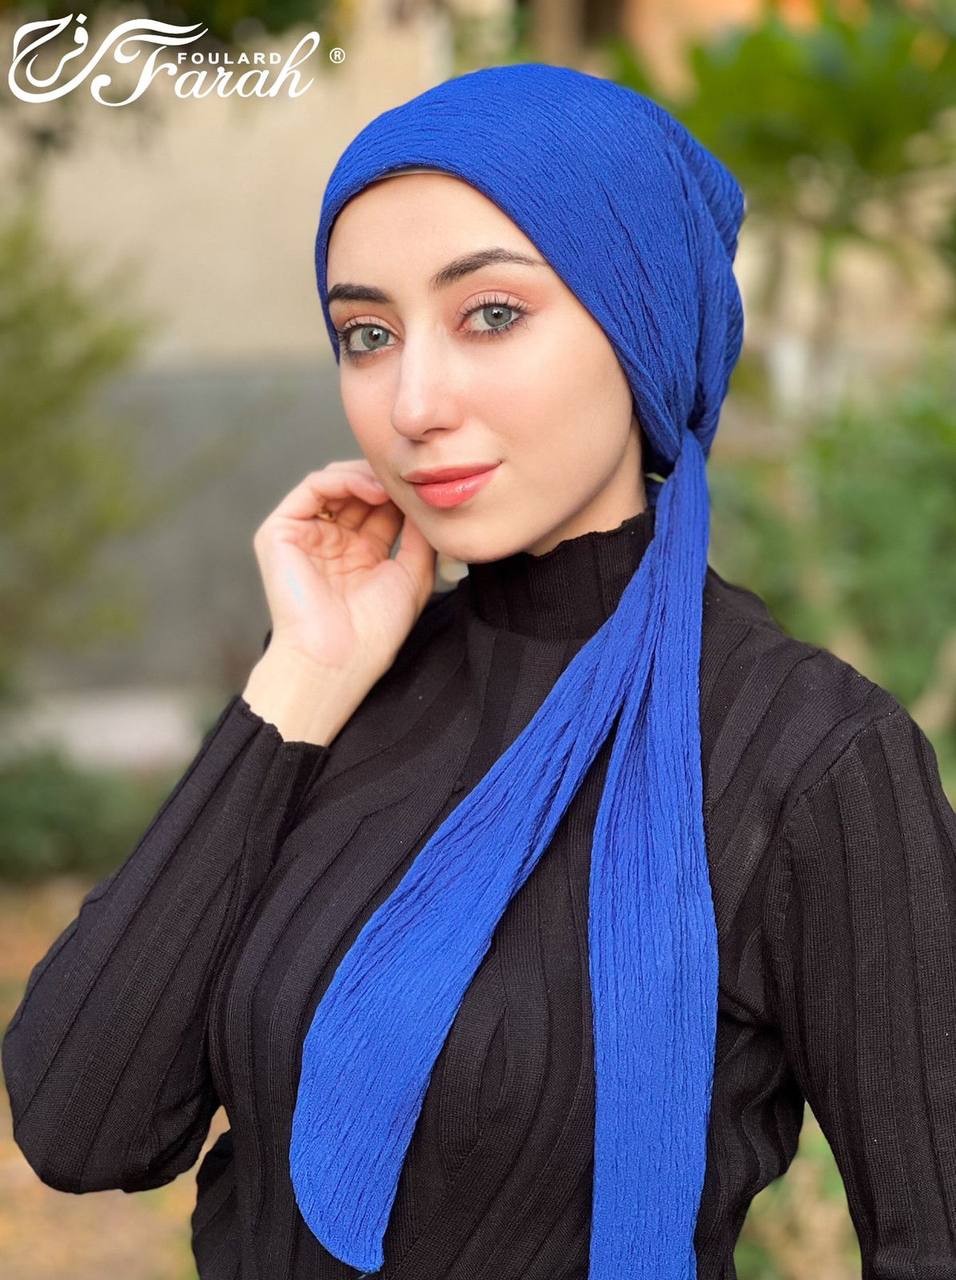 Elegant Pleated Turban Hijab - Stylish Headwrap for Modest Fashion - Royal Blue